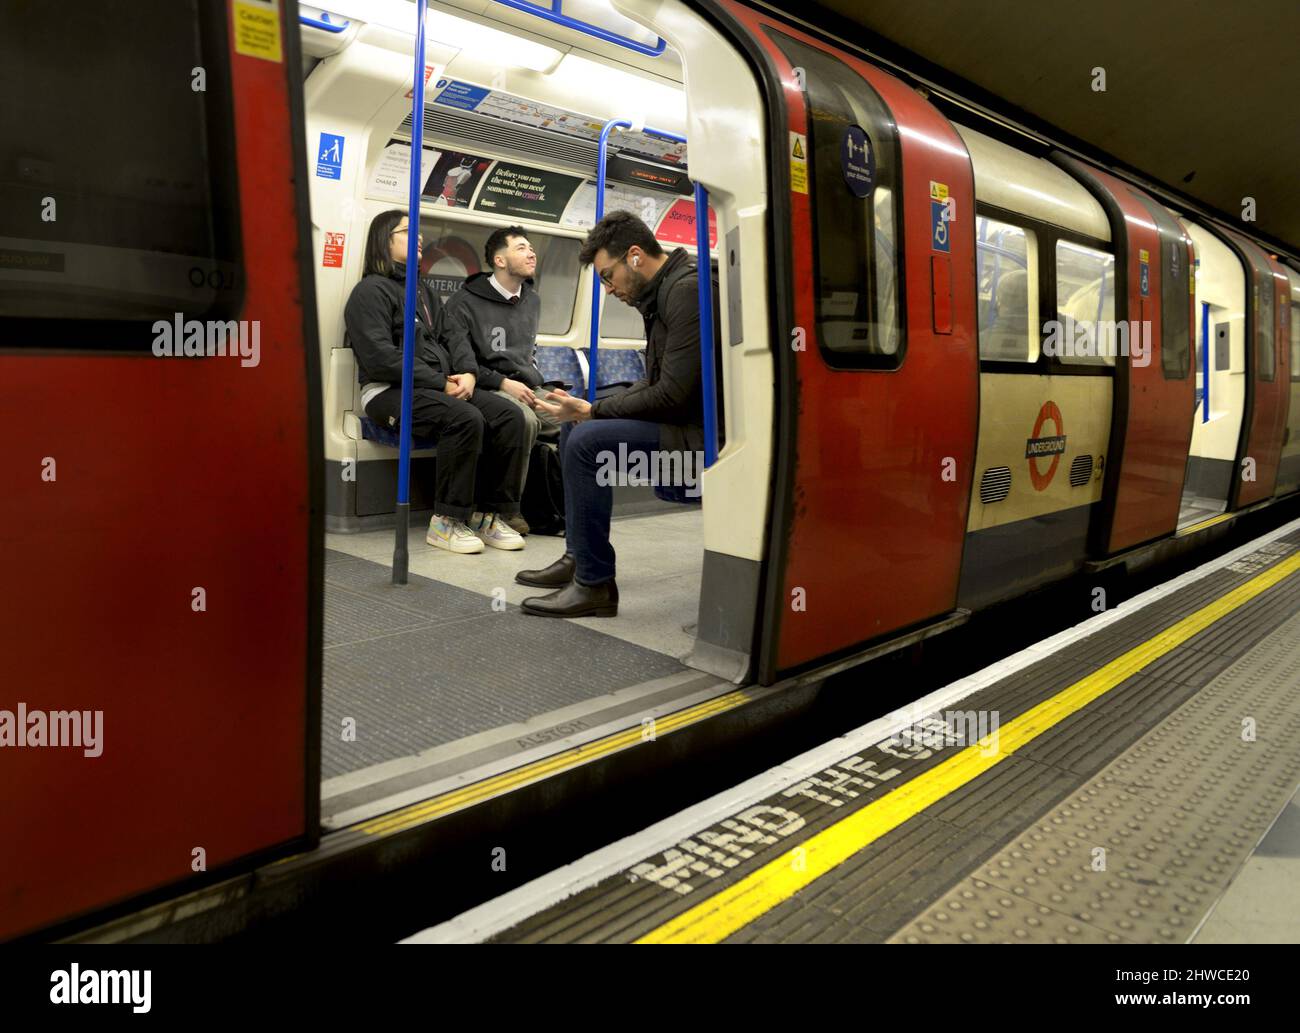 London, England, Großbritannien. Öffnen Sie die Tür des U-Bahn-Zuges mit den Fahrgästen im Inneren und beachten Sie die Gap-Warnung auf dem Bahnsteig Stockfoto